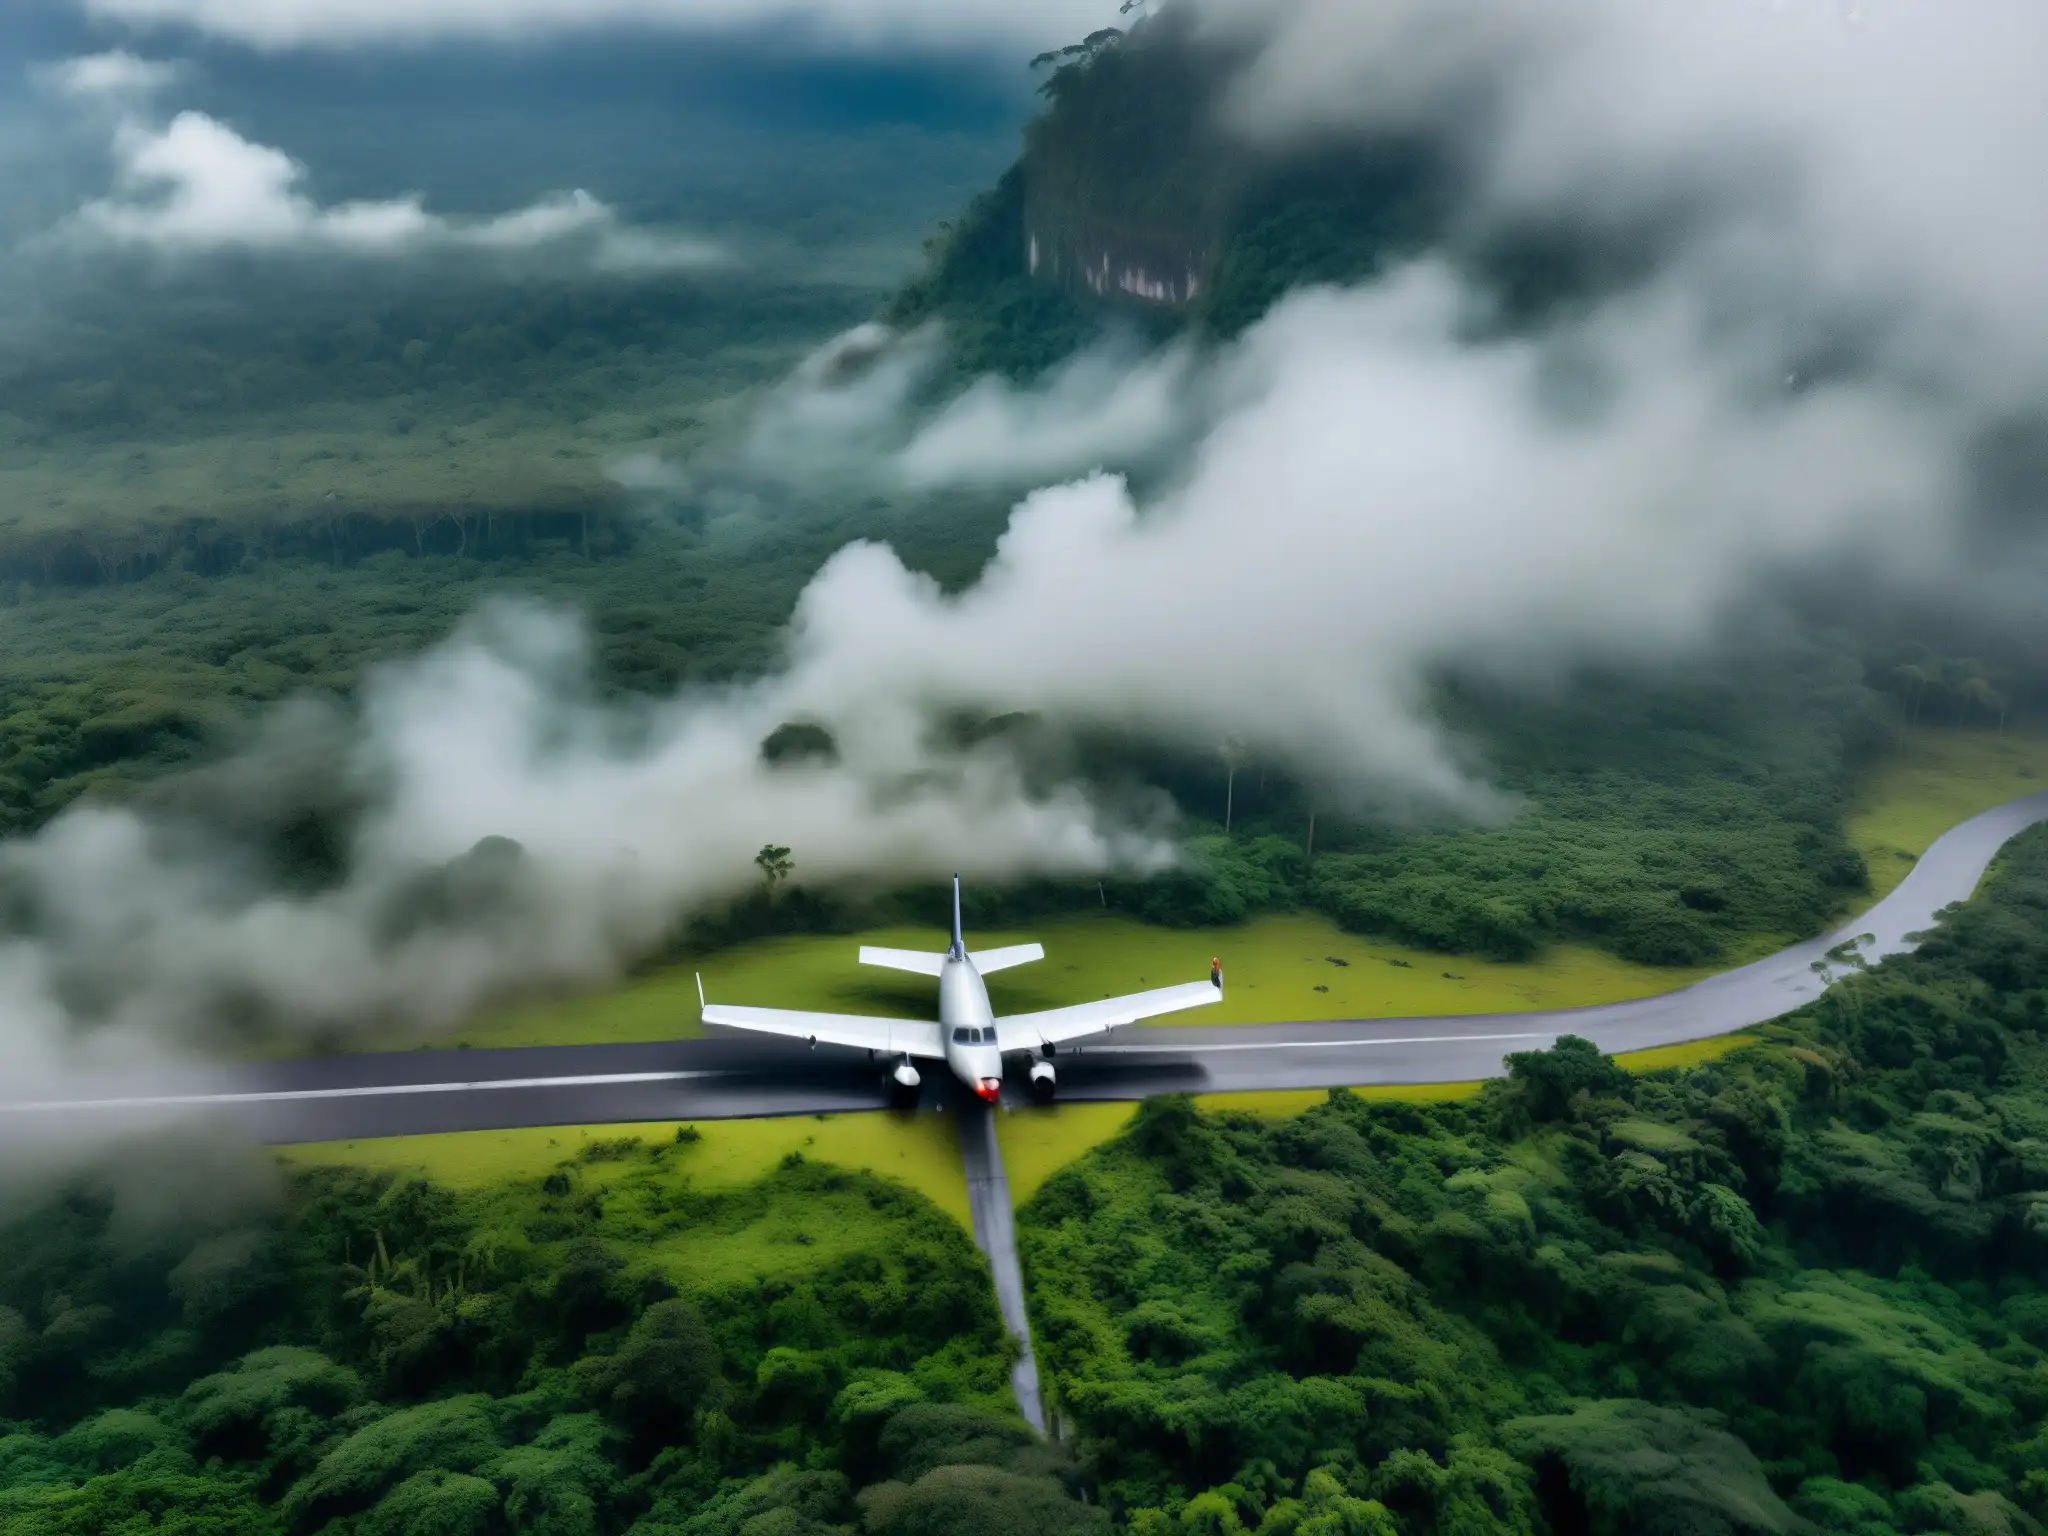 Un misterioso y remoto aeródromo envuelto en niebla, con un avión antiguo y detectives examinando pistas